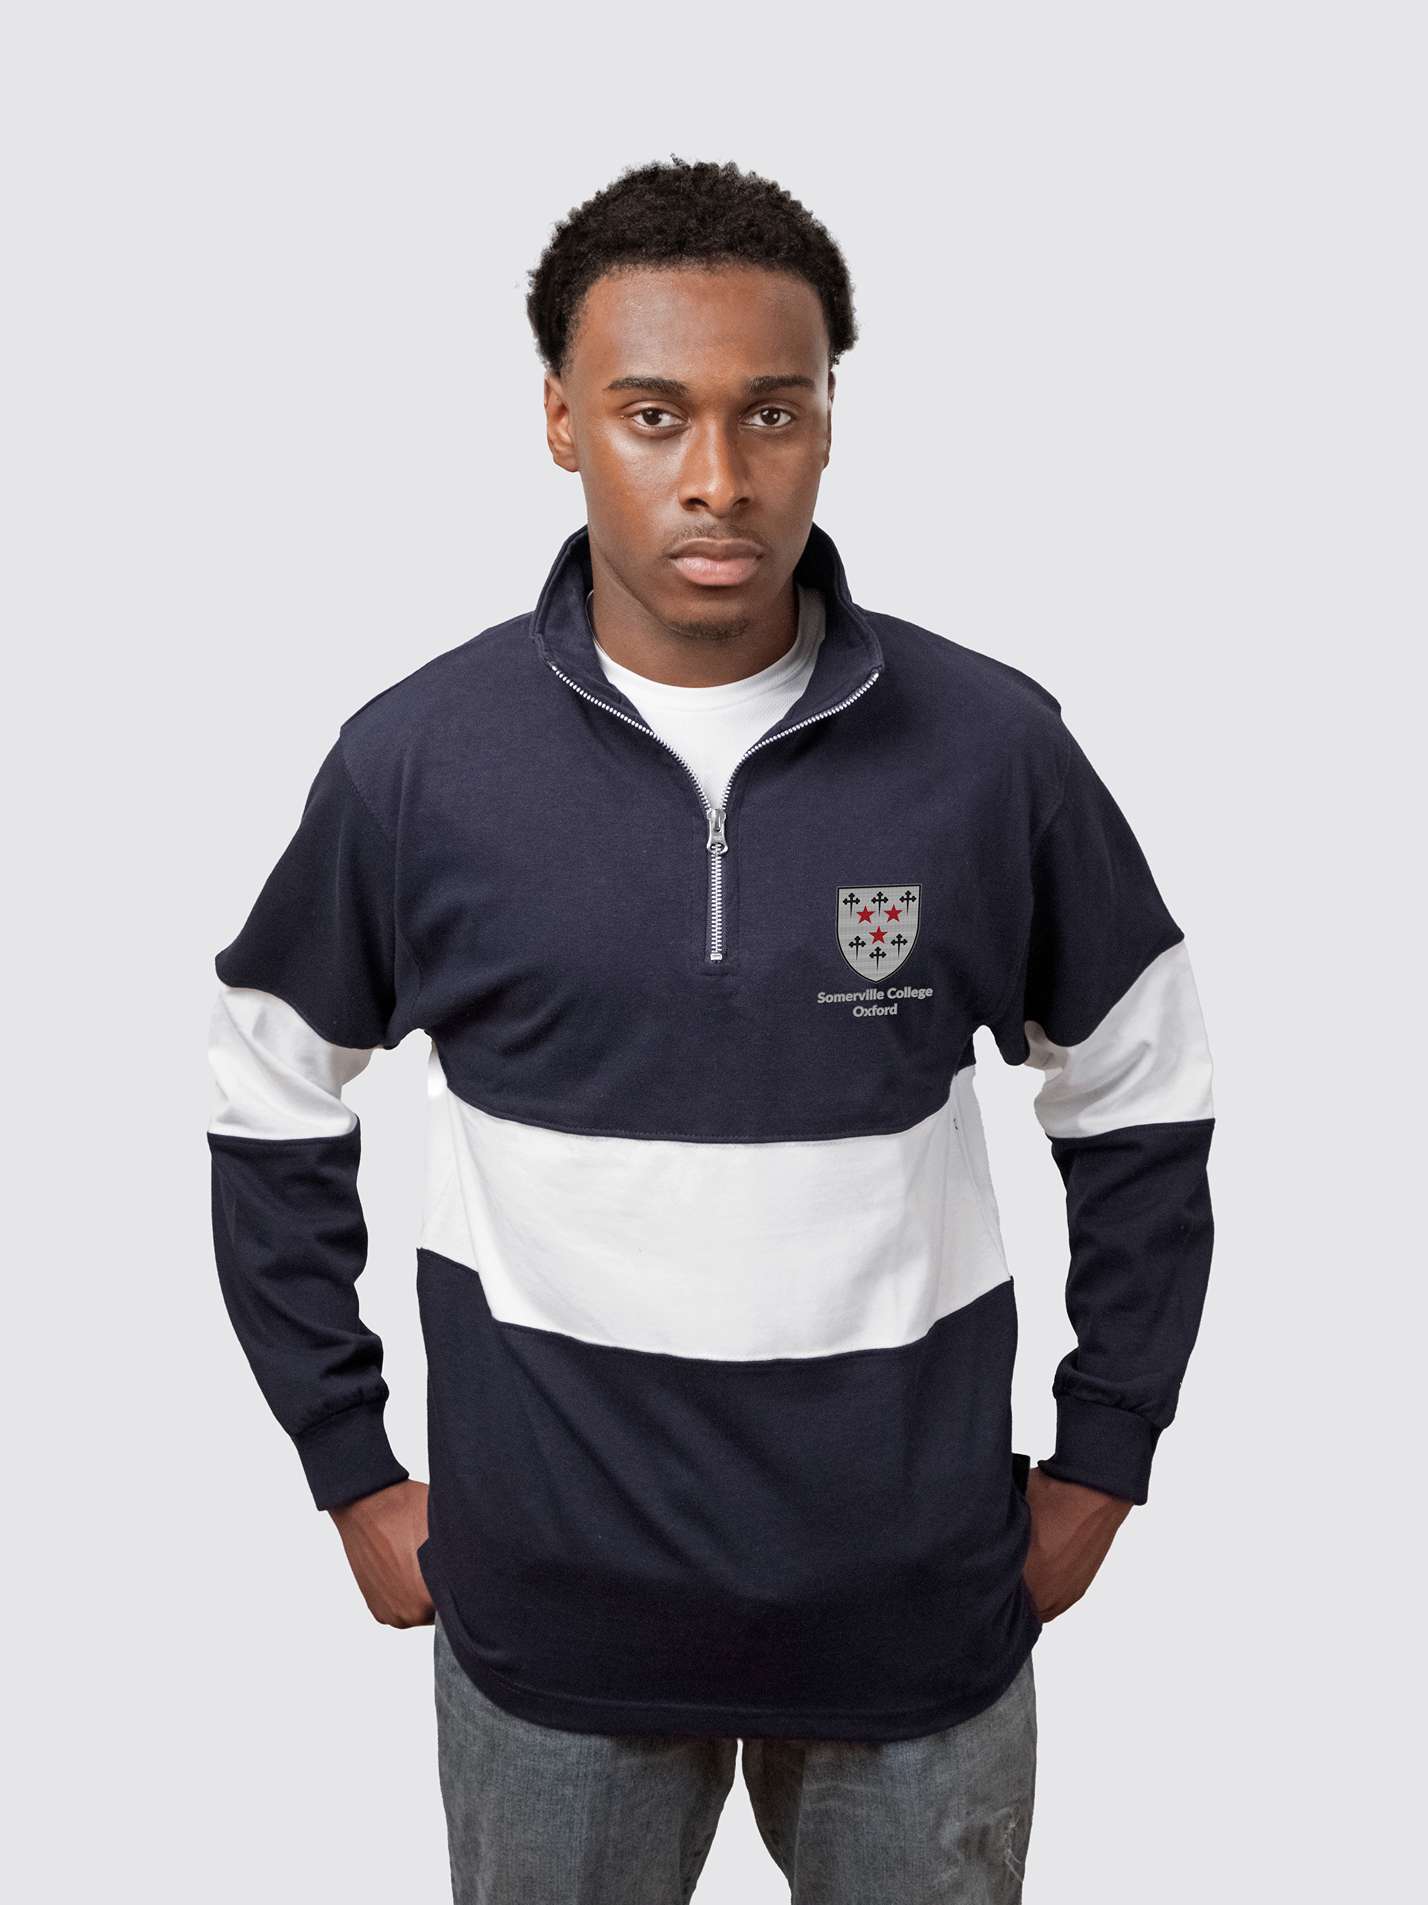 Somerville College Oxford JCR Traditional Crest Unisex Panelled 1/4 Zip Sweatshirt